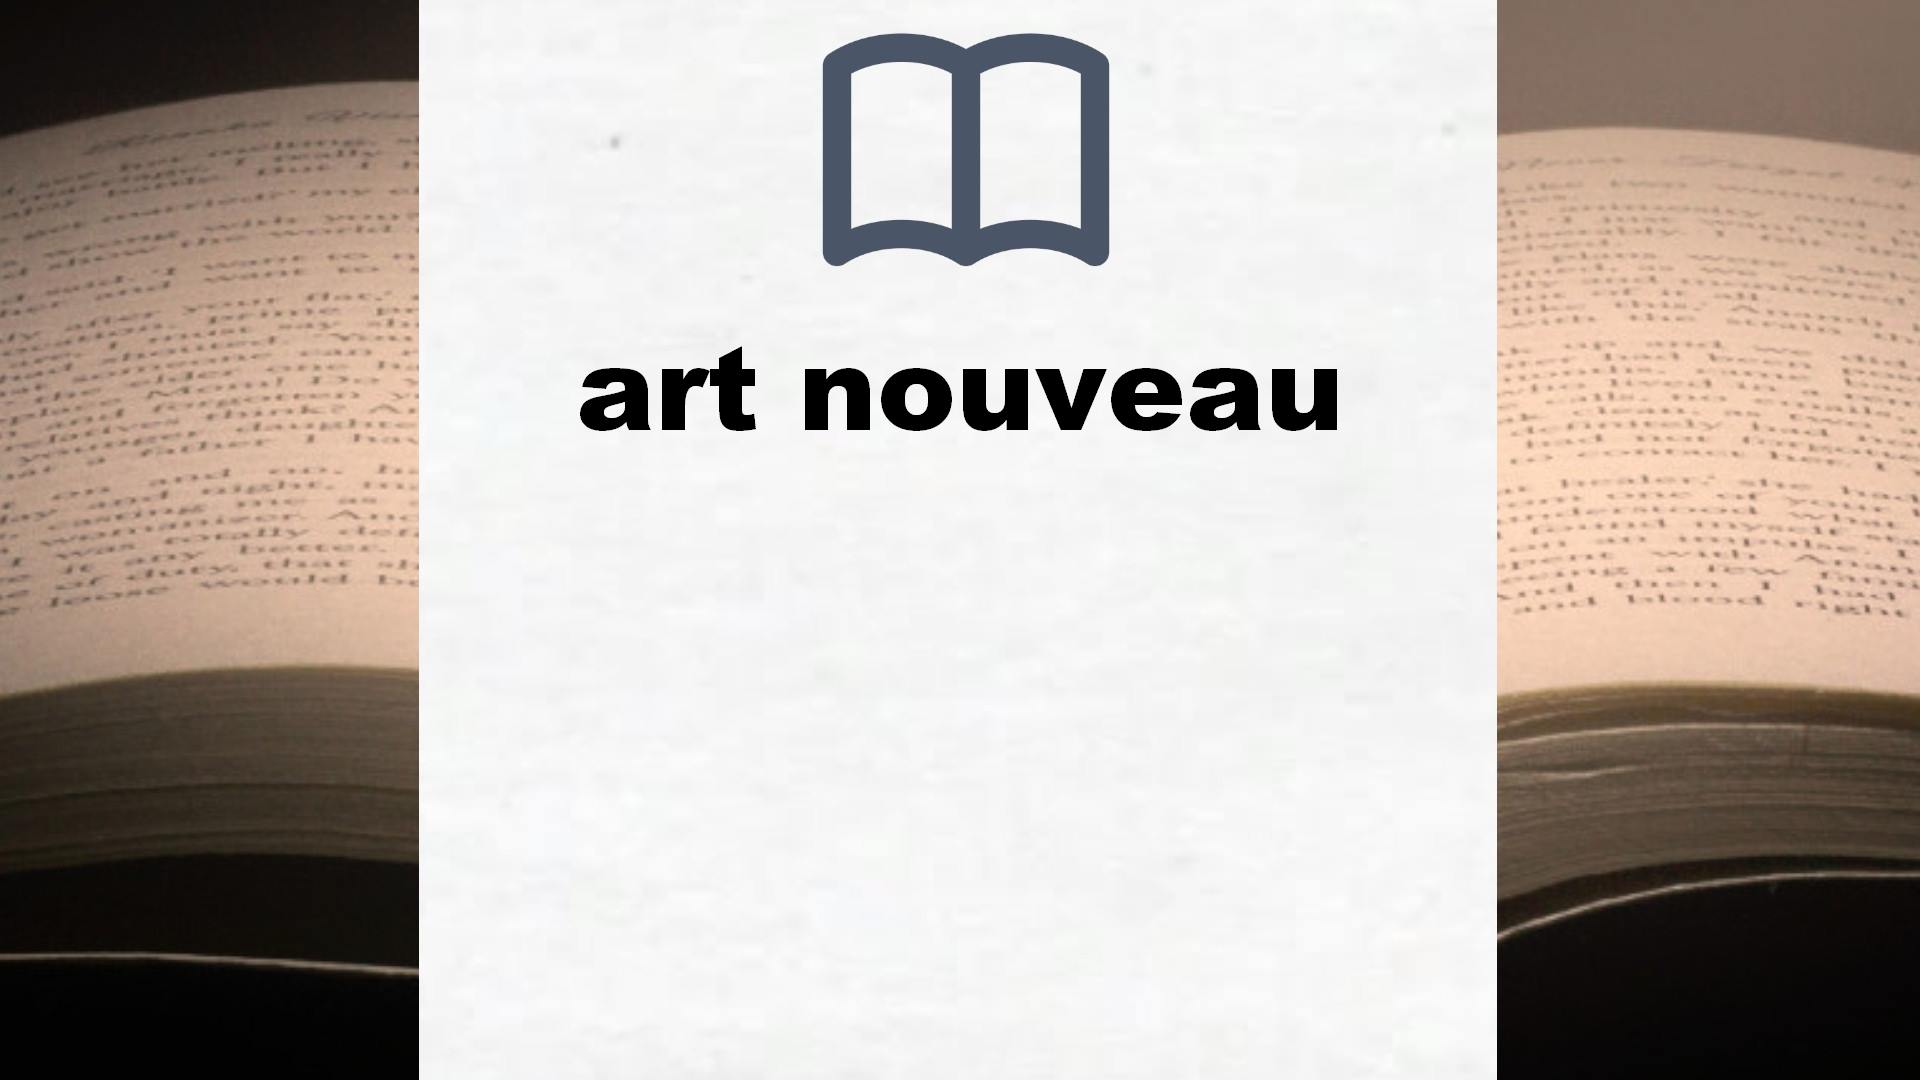 Libros sobre art nouveau